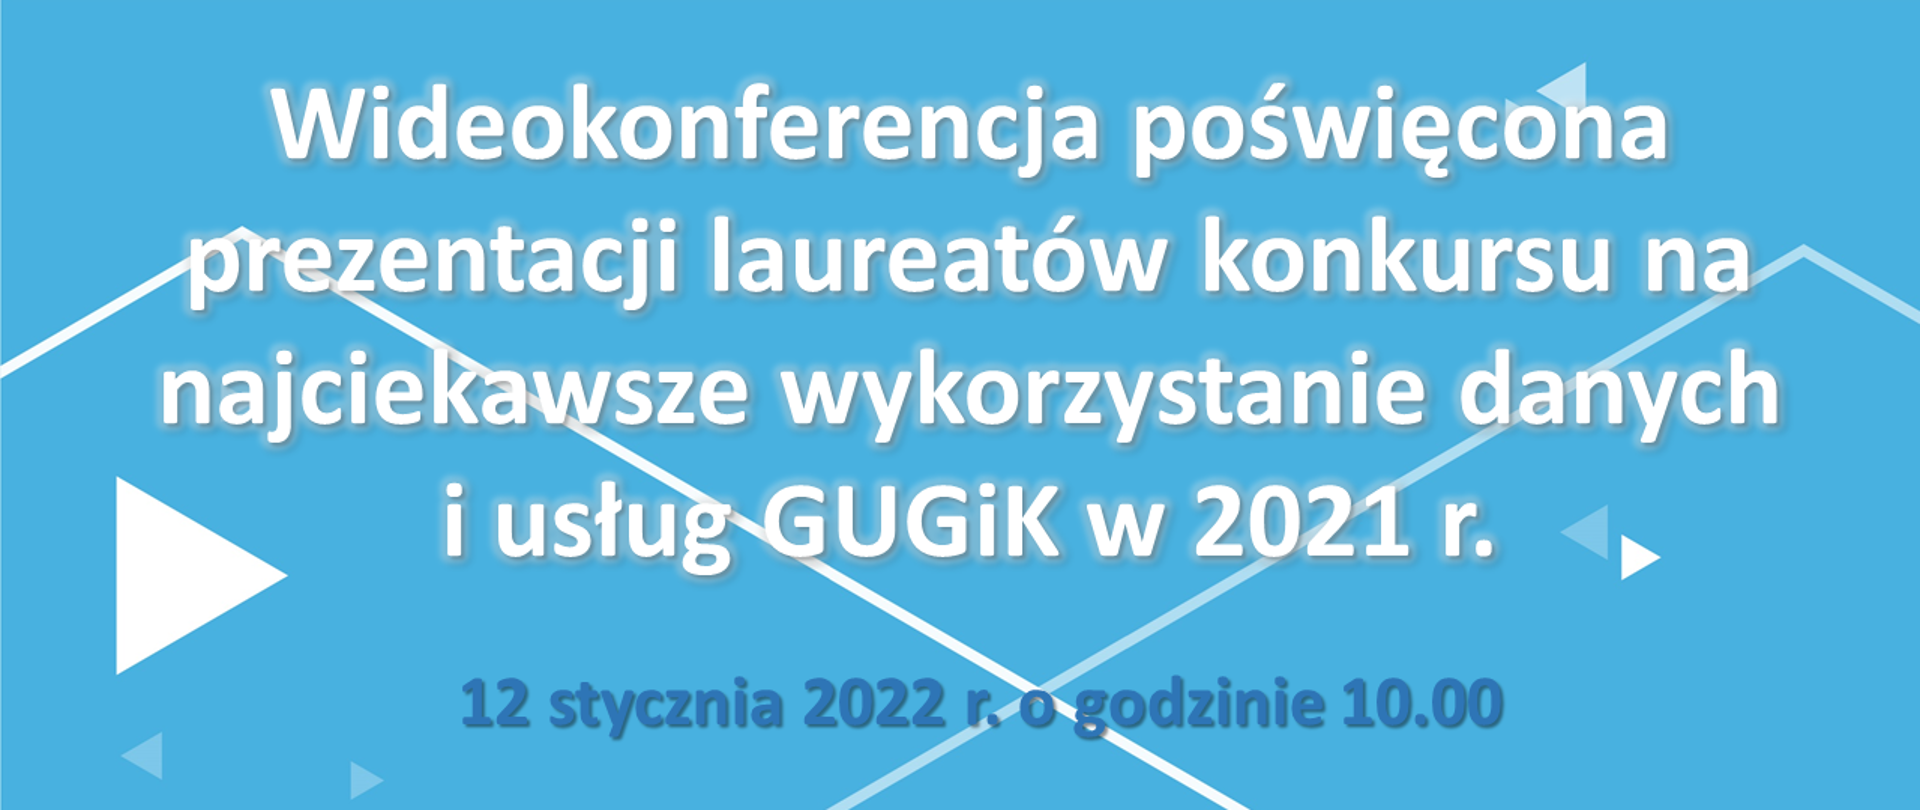 Na ilustracji na niebieskim tle znajduje się napis "Wideokonferencja poświęcona prezentacji laureatów konkursu na najciekawsze wykorzystanie danych i usług GUGiK w 2021 r." i data "12 stycznia 2022 r. o godzinie 10.00". Na białym pasku u góry można zobaczyć logo Głównego Urzędu Geodezji i Kartografii, logo strony geoportal.gov.pl i tekst: "Spotkanie otwarte dla wszystkich zainteresowanych".